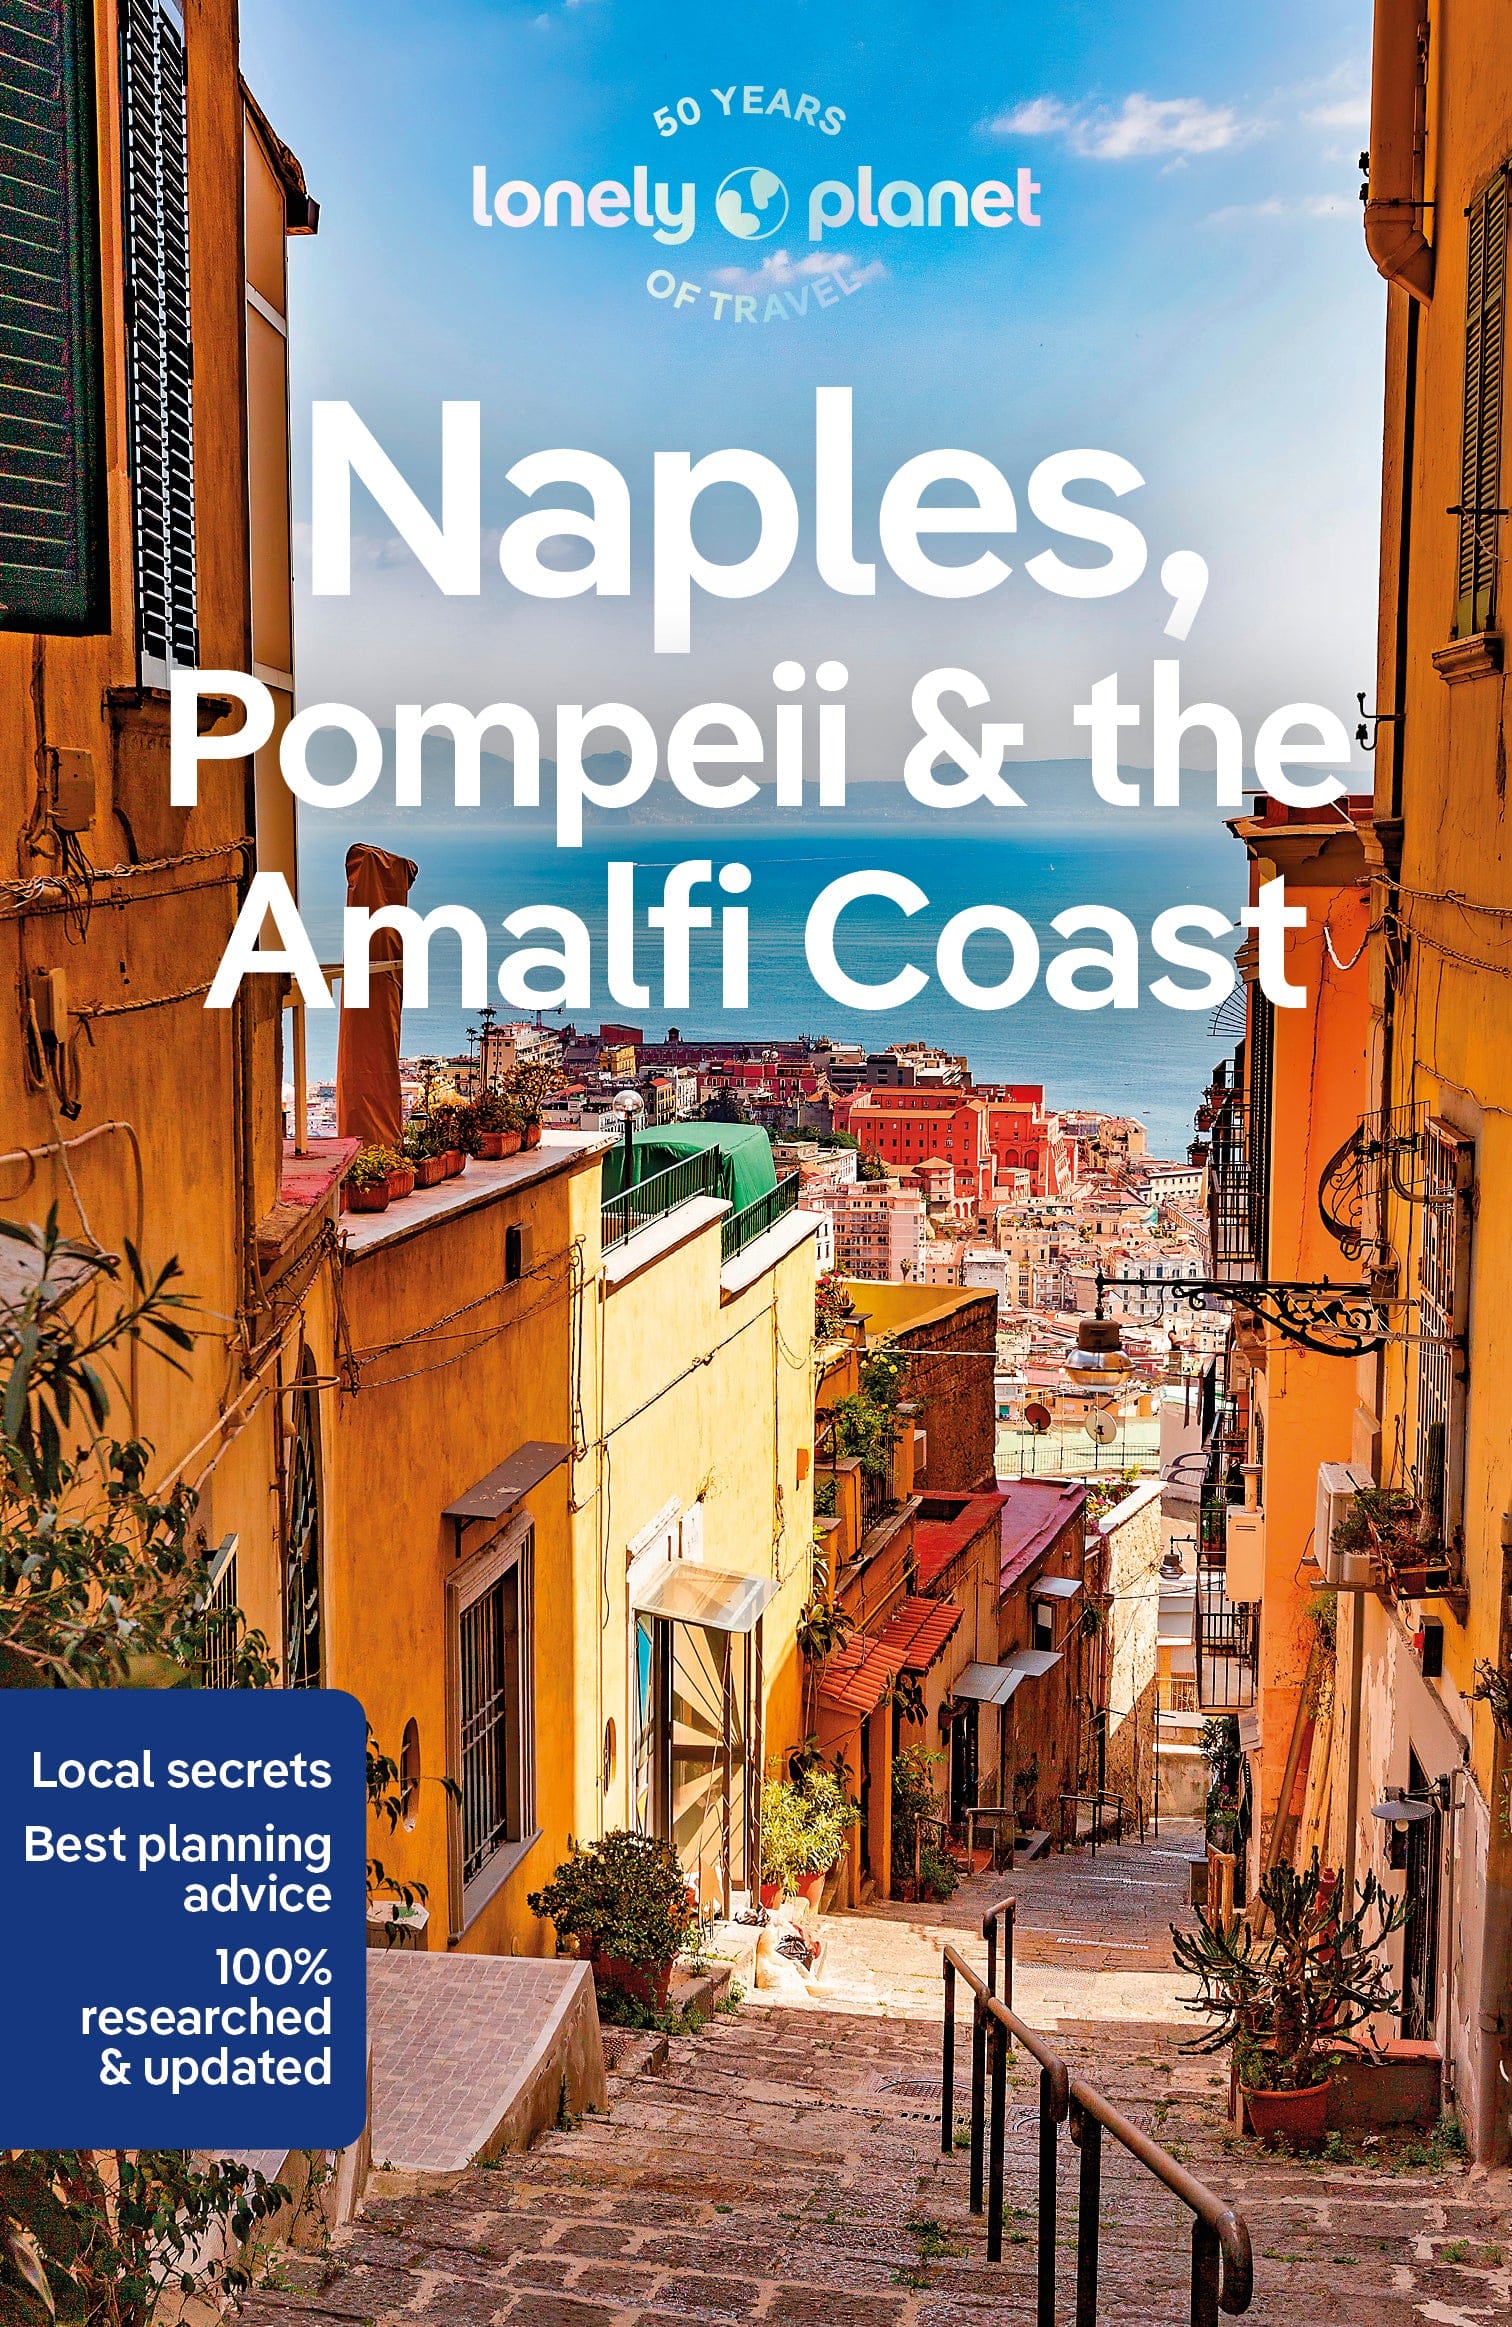 Naples, Pompeii & the Amalfi Coast preview